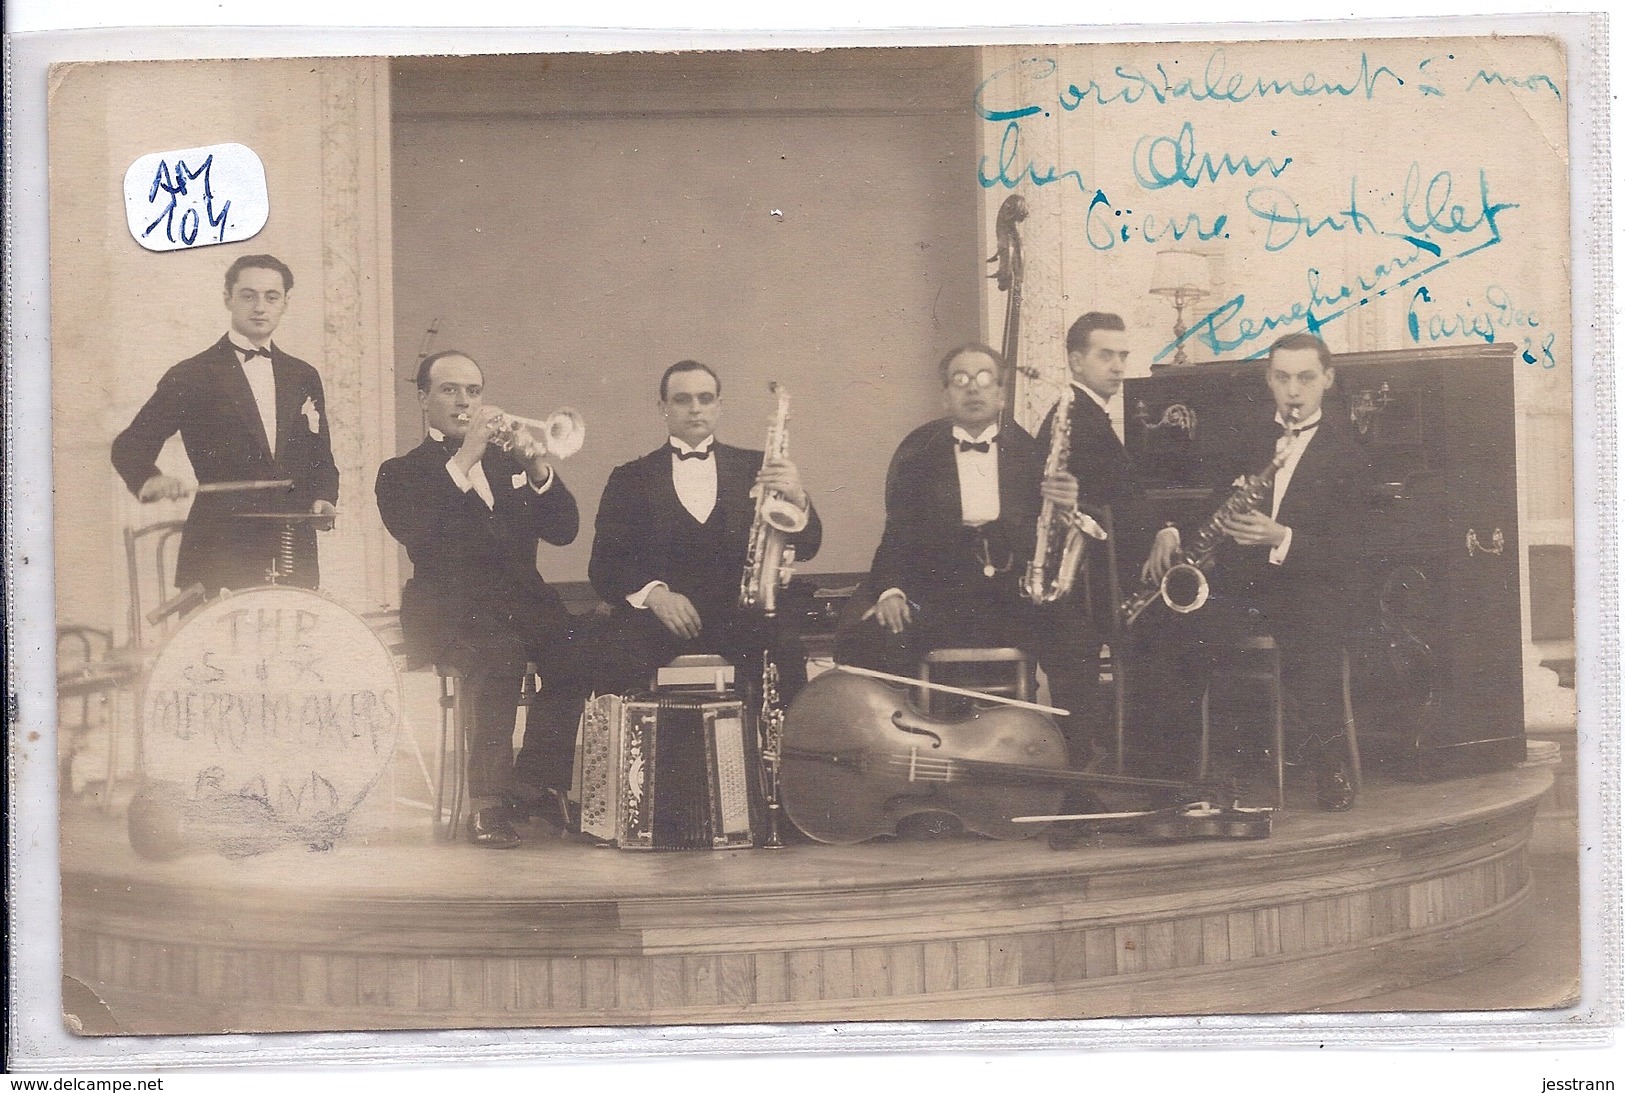 CARTE-PHOTO- PARIS 1928- THE MERRYMAKERS BAND EN REPRESENTATION- AUTOGRAPHE ET DEDICACE - Musica E Musicisti